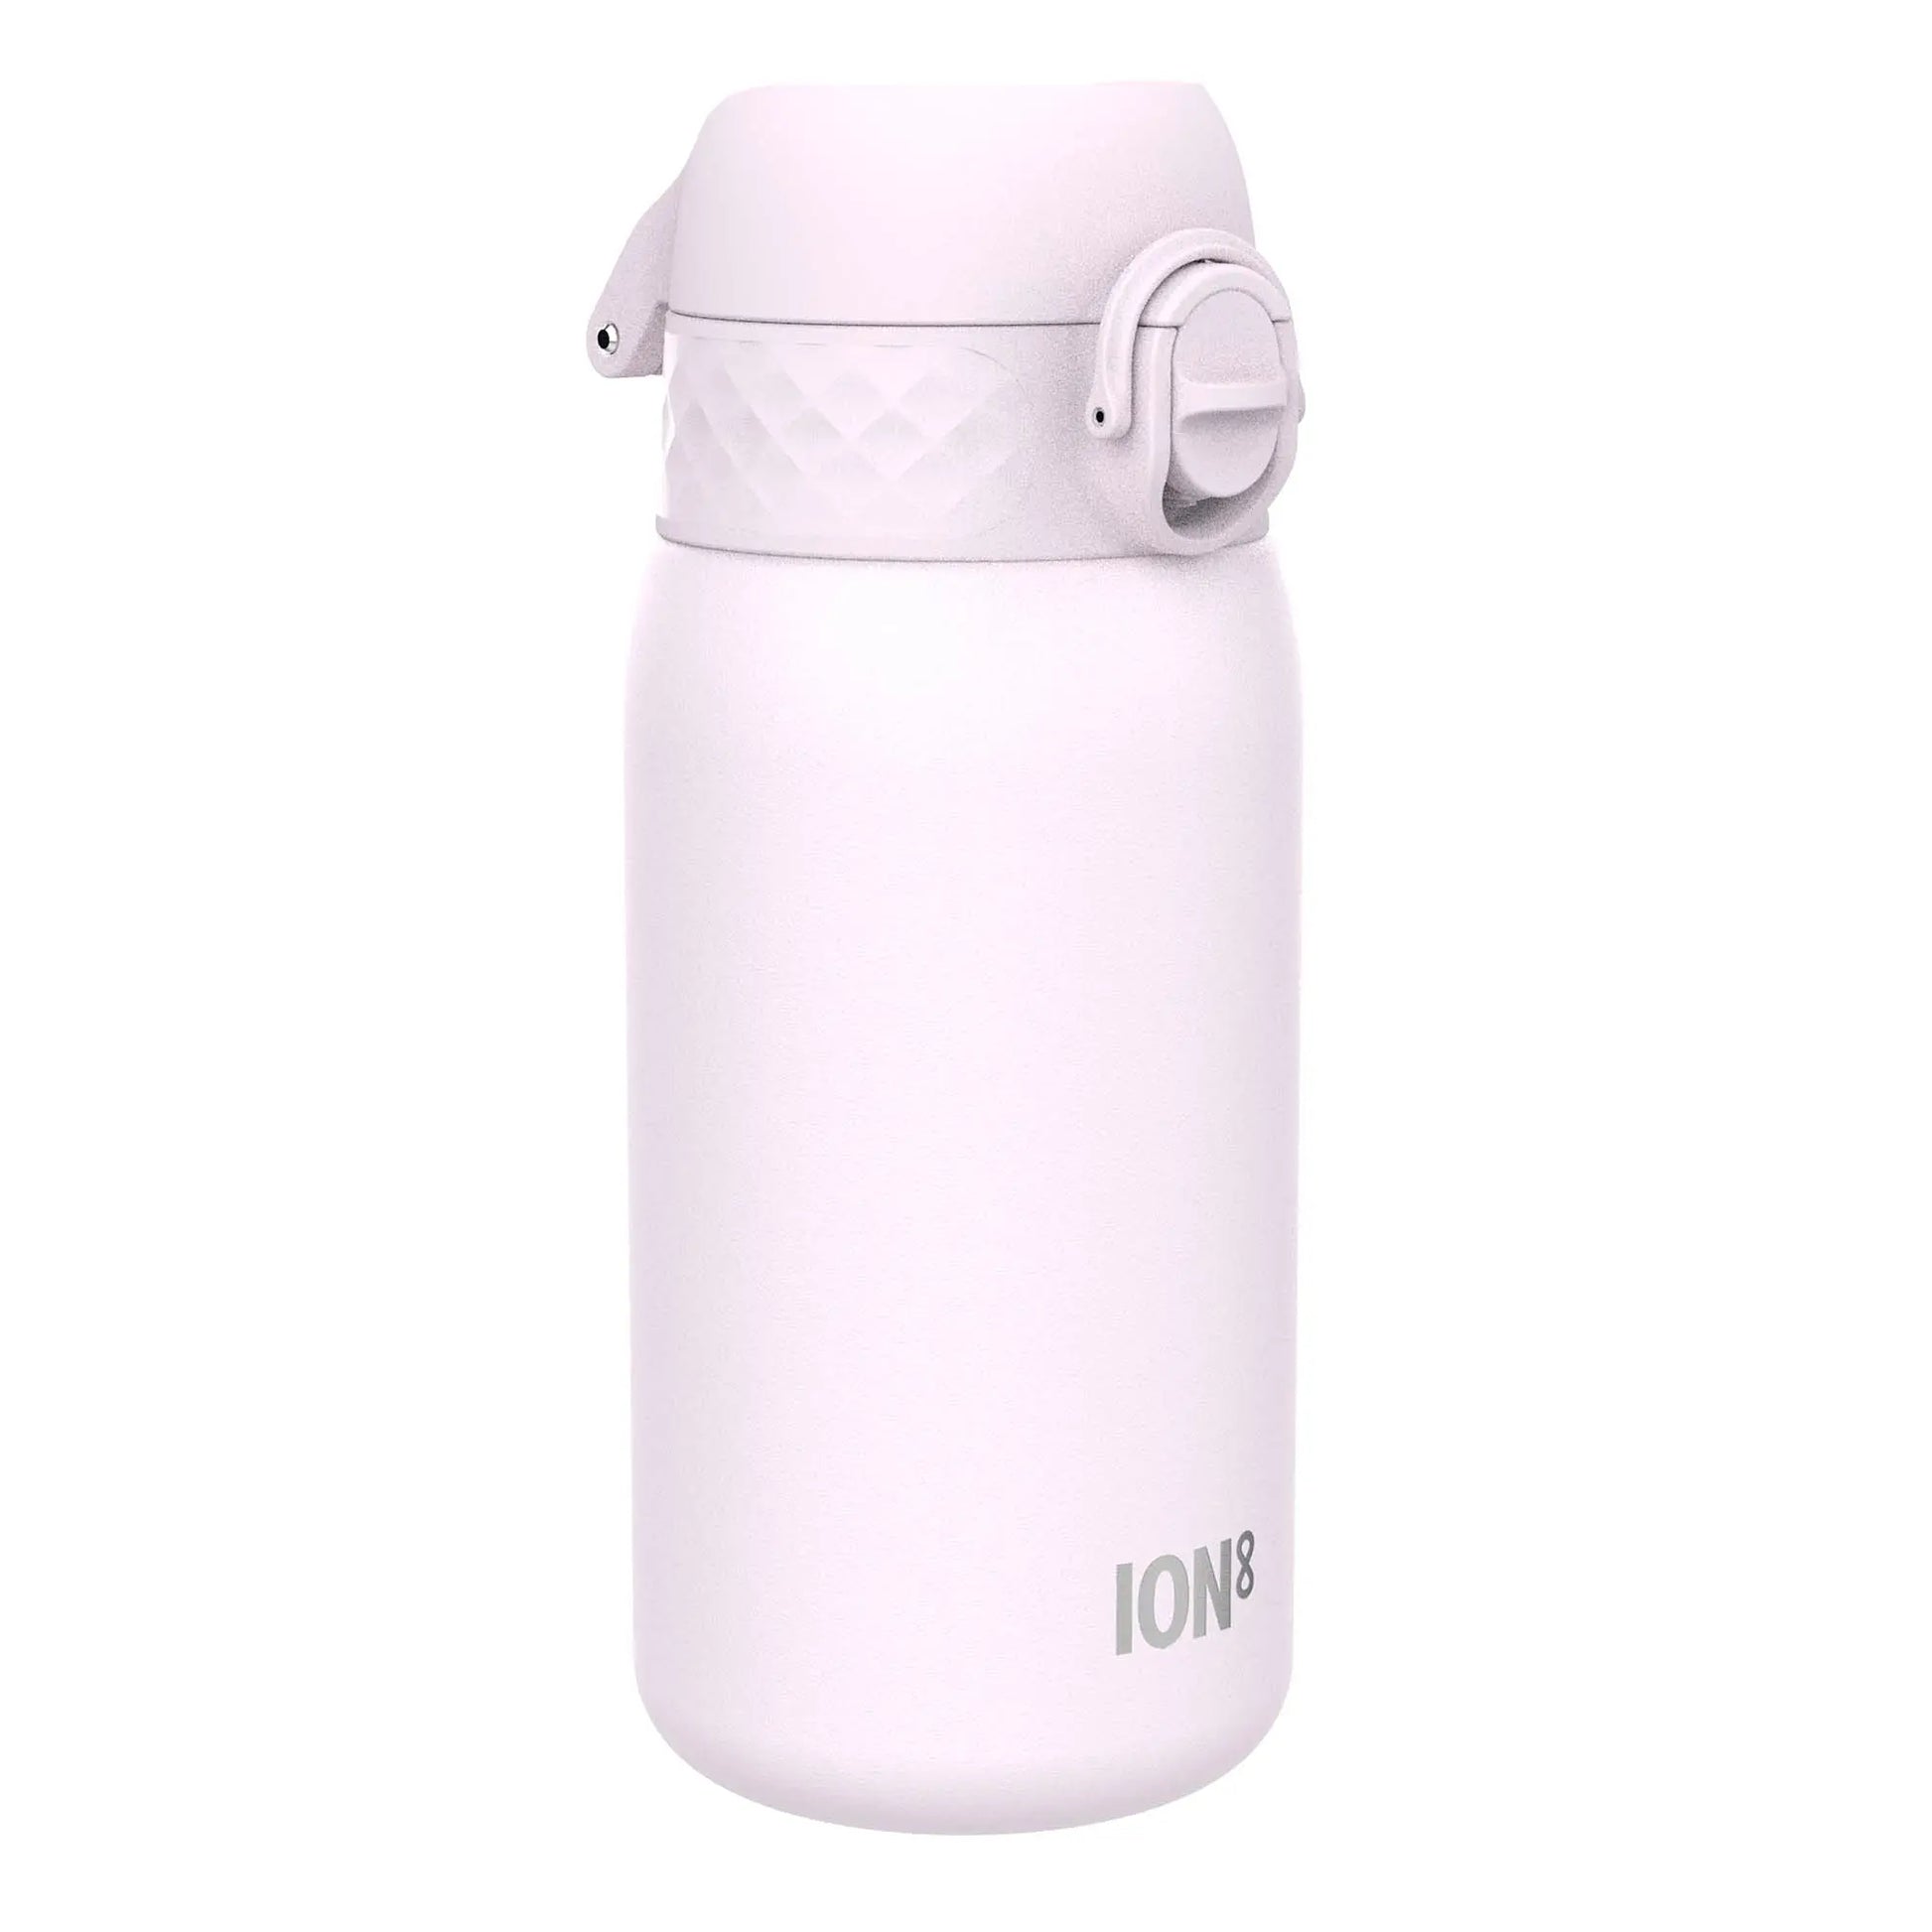 Ion8 Leak Proof Kids' Water Bottle, Stainless Steel, Lockable Lid, 400ml